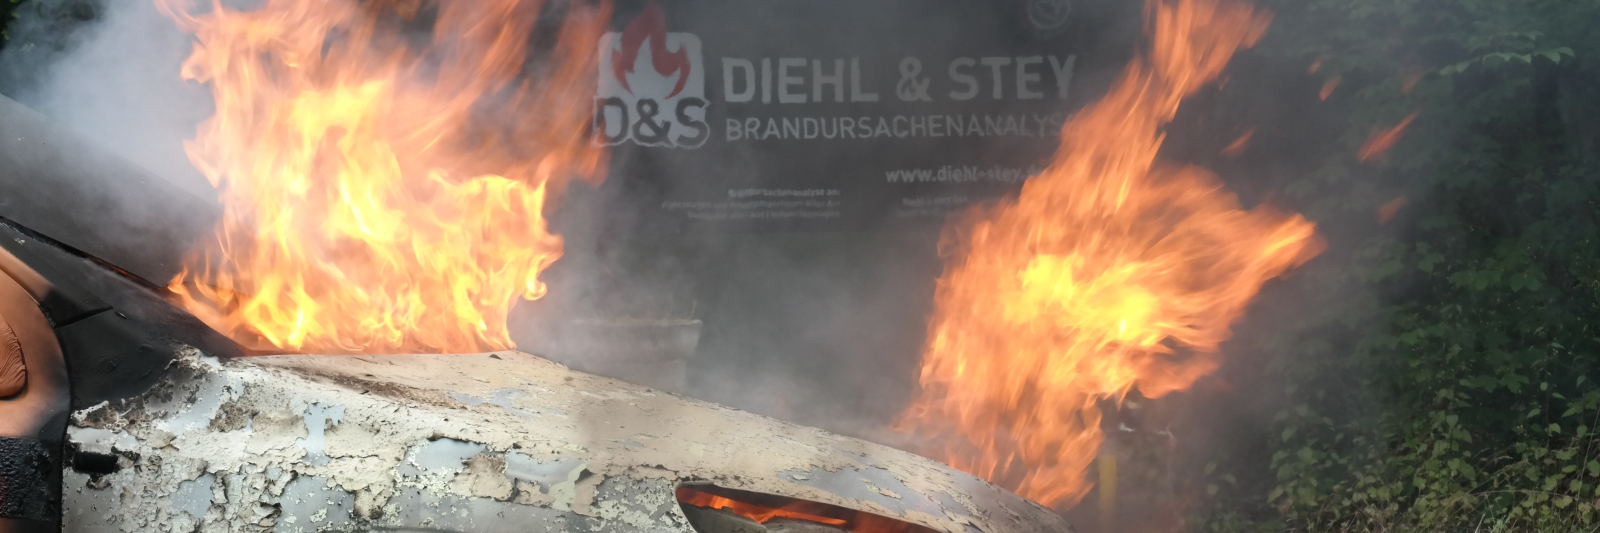 Diehl & Stey Brandversuche 